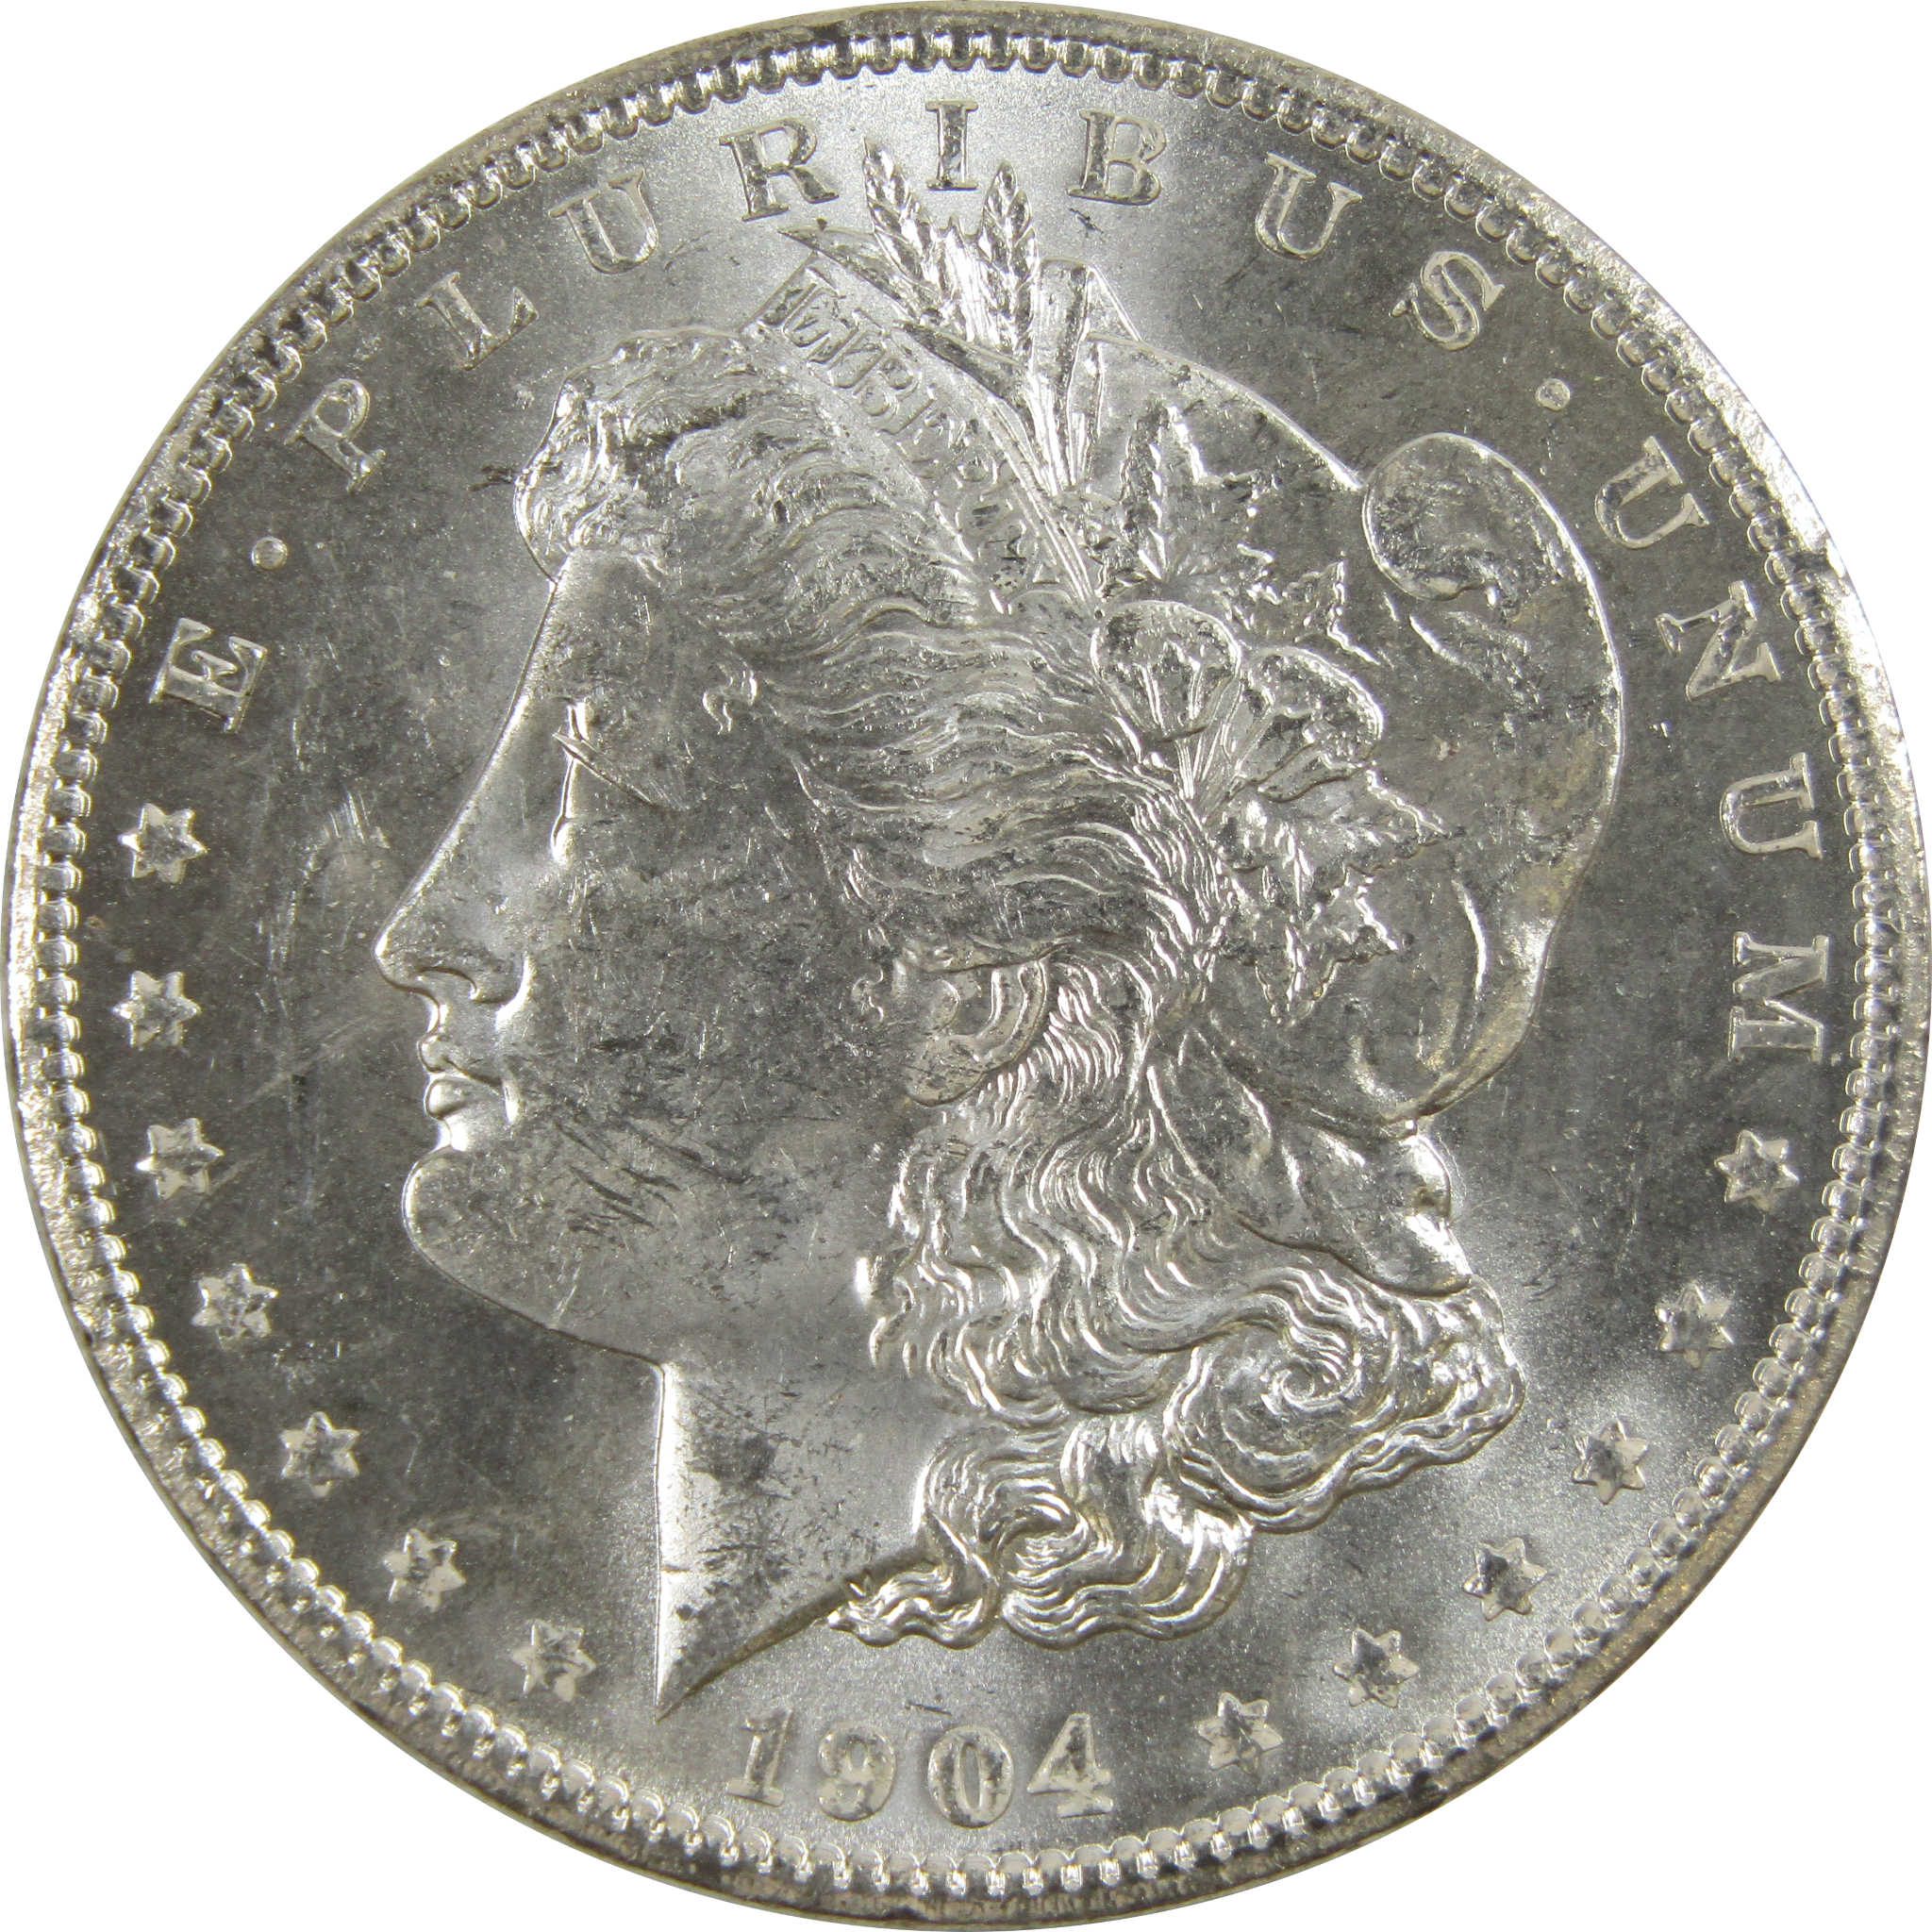 1904 O Morgan Dollar BU Uncirculated 90% Silver $1 Coin SKU:I5219 - Morgan coin - Morgan silver dollar - Morgan silver dollar for sale - Profile Coins &amp; Collectibles